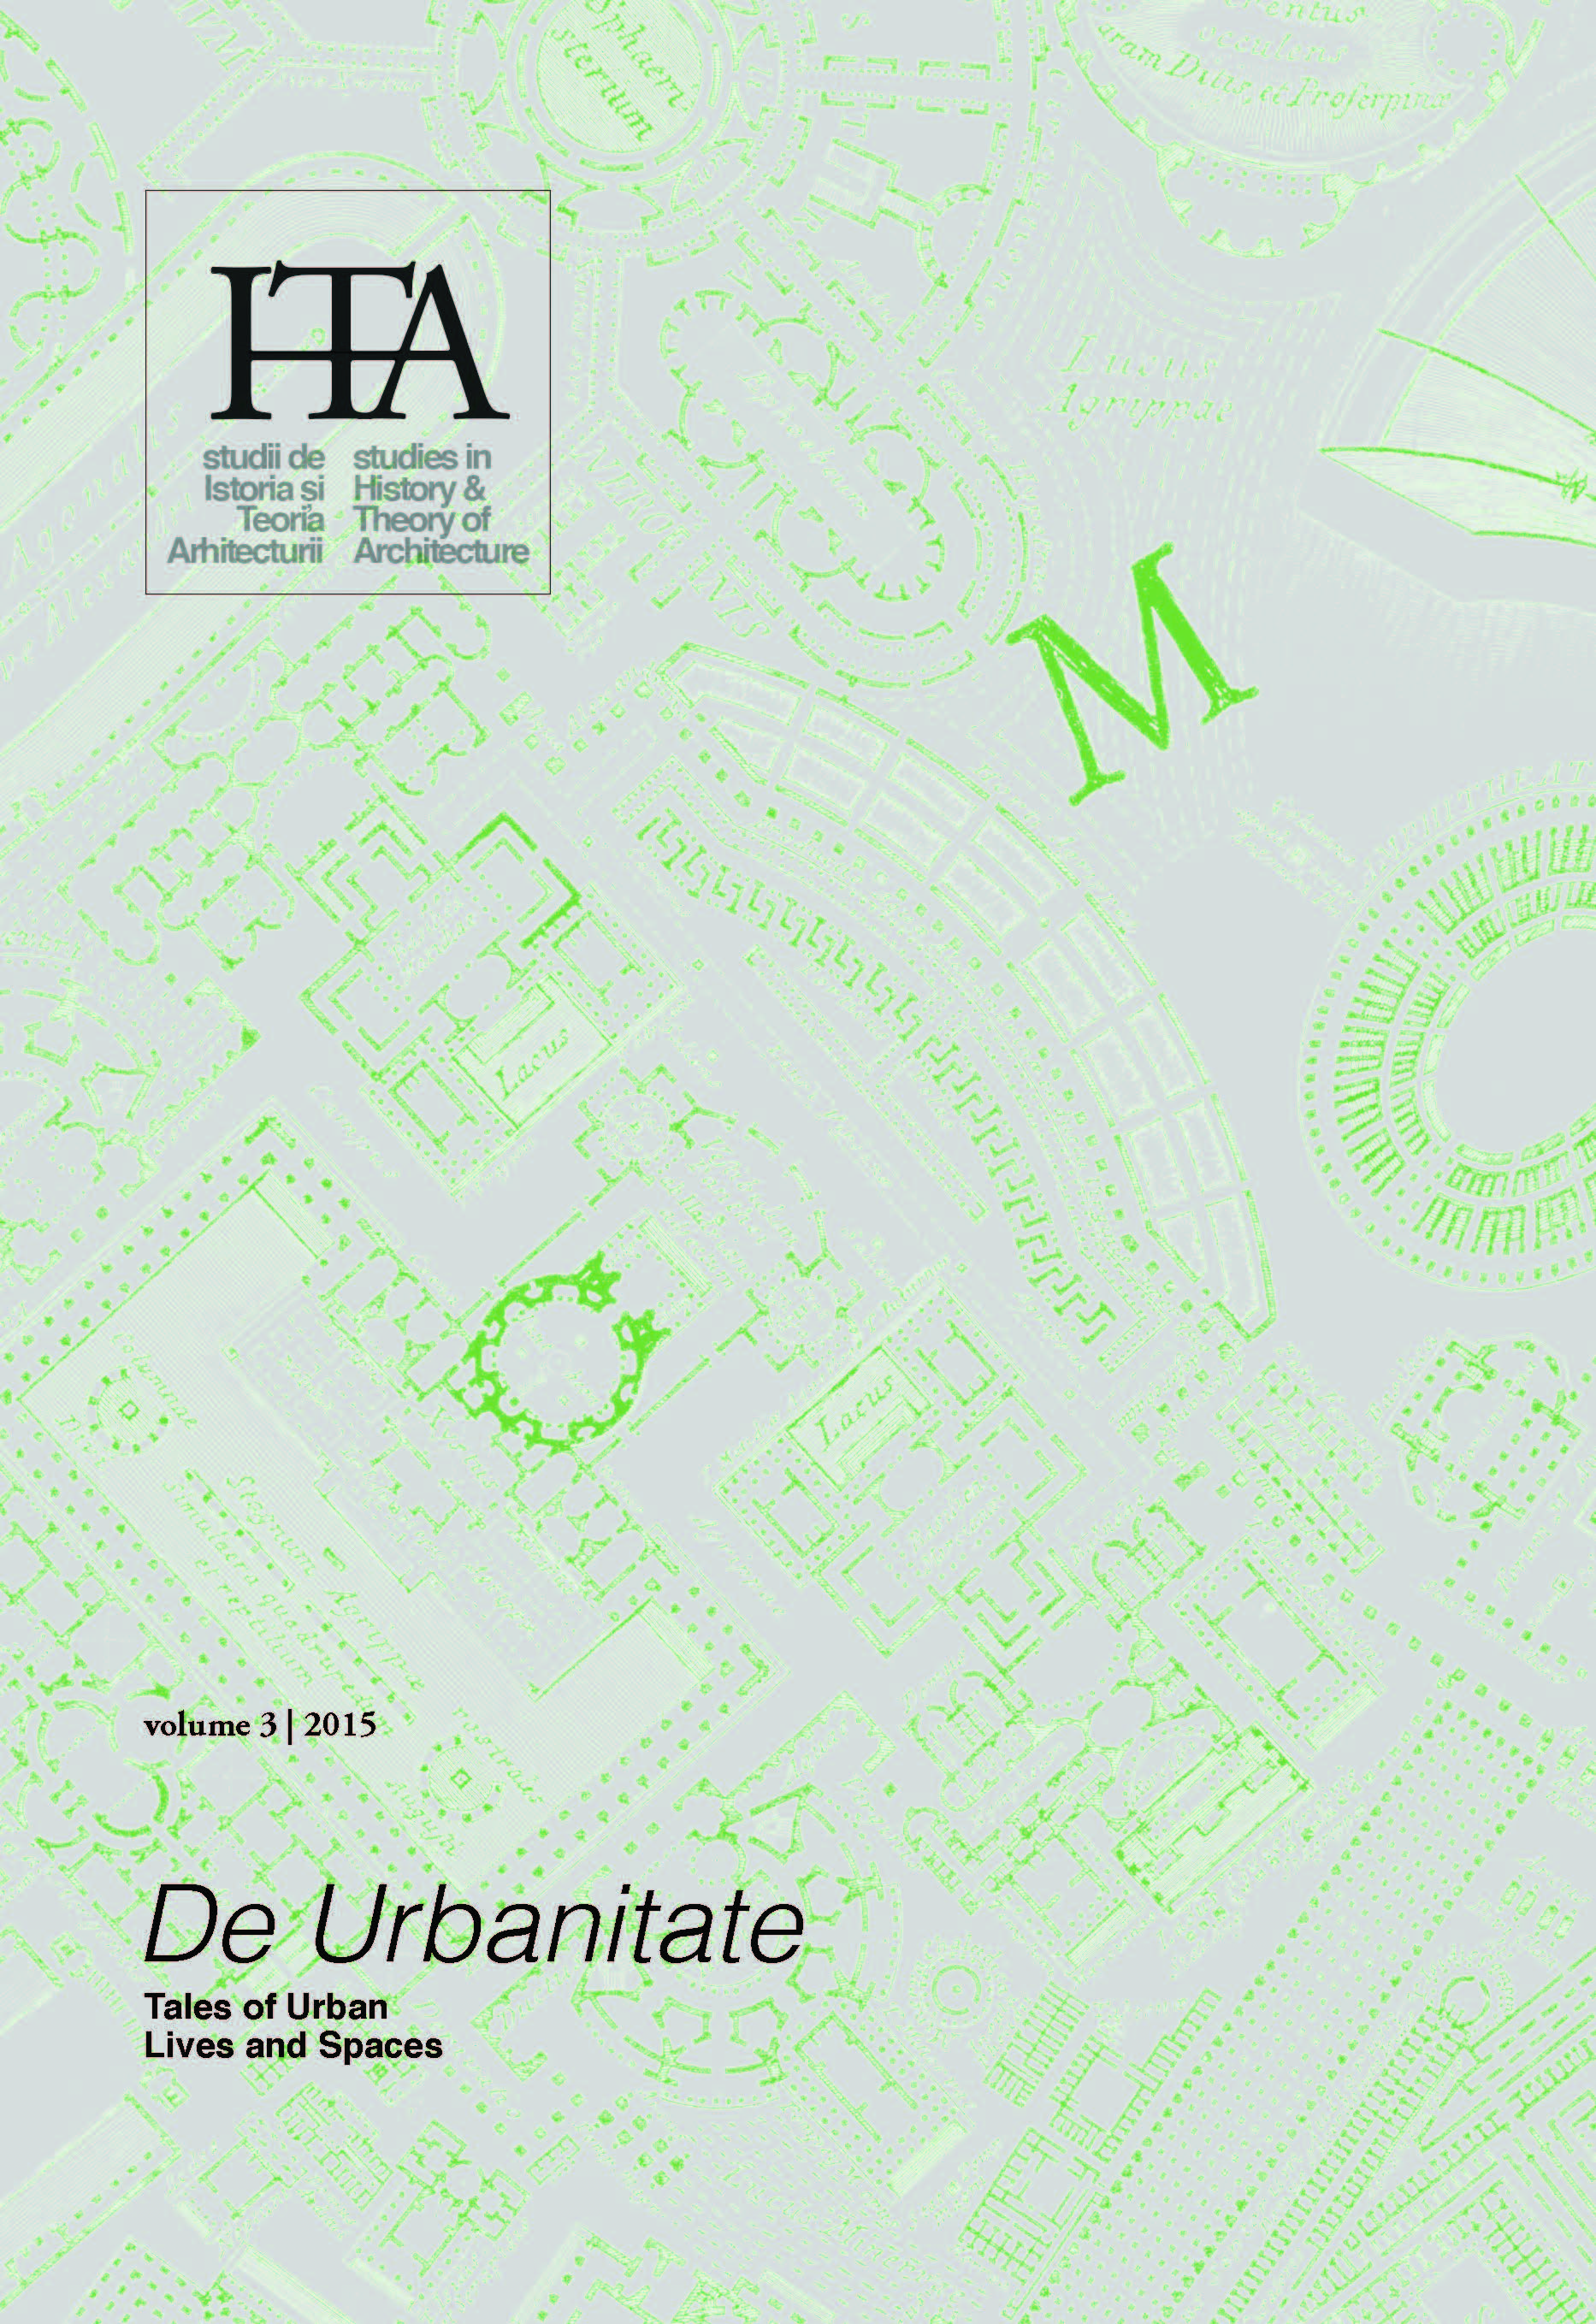 Grigor Doytchinov, Alexandra Ðukić, Cătălina Ioniță (eds.), Planning Capital Cities: Belgrade, Bucharest, Sofia Cover Image